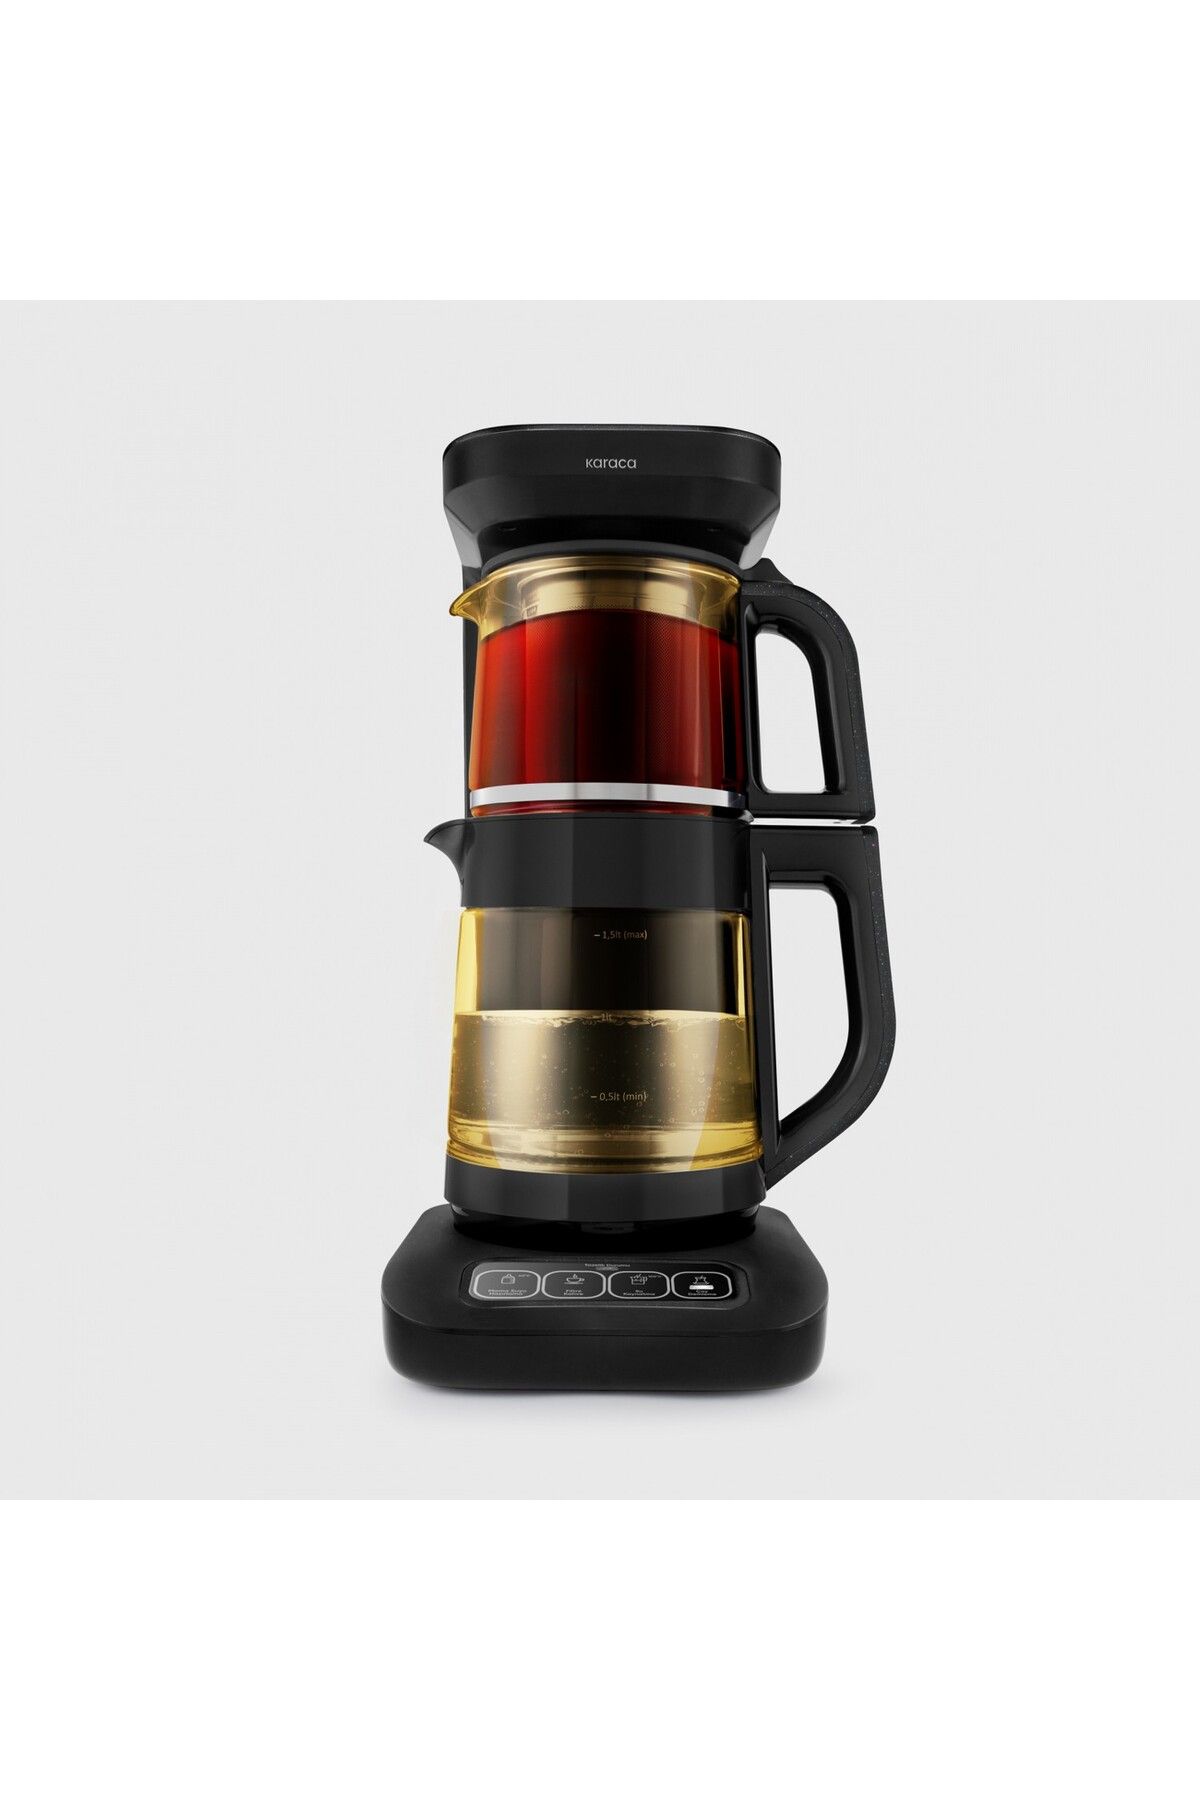 Karaca Konuşan Otomatik Renkli Camlı Çay Makinesi Su Isıtıcı ve Filtre Kahve Demleme Makinesi 2500W